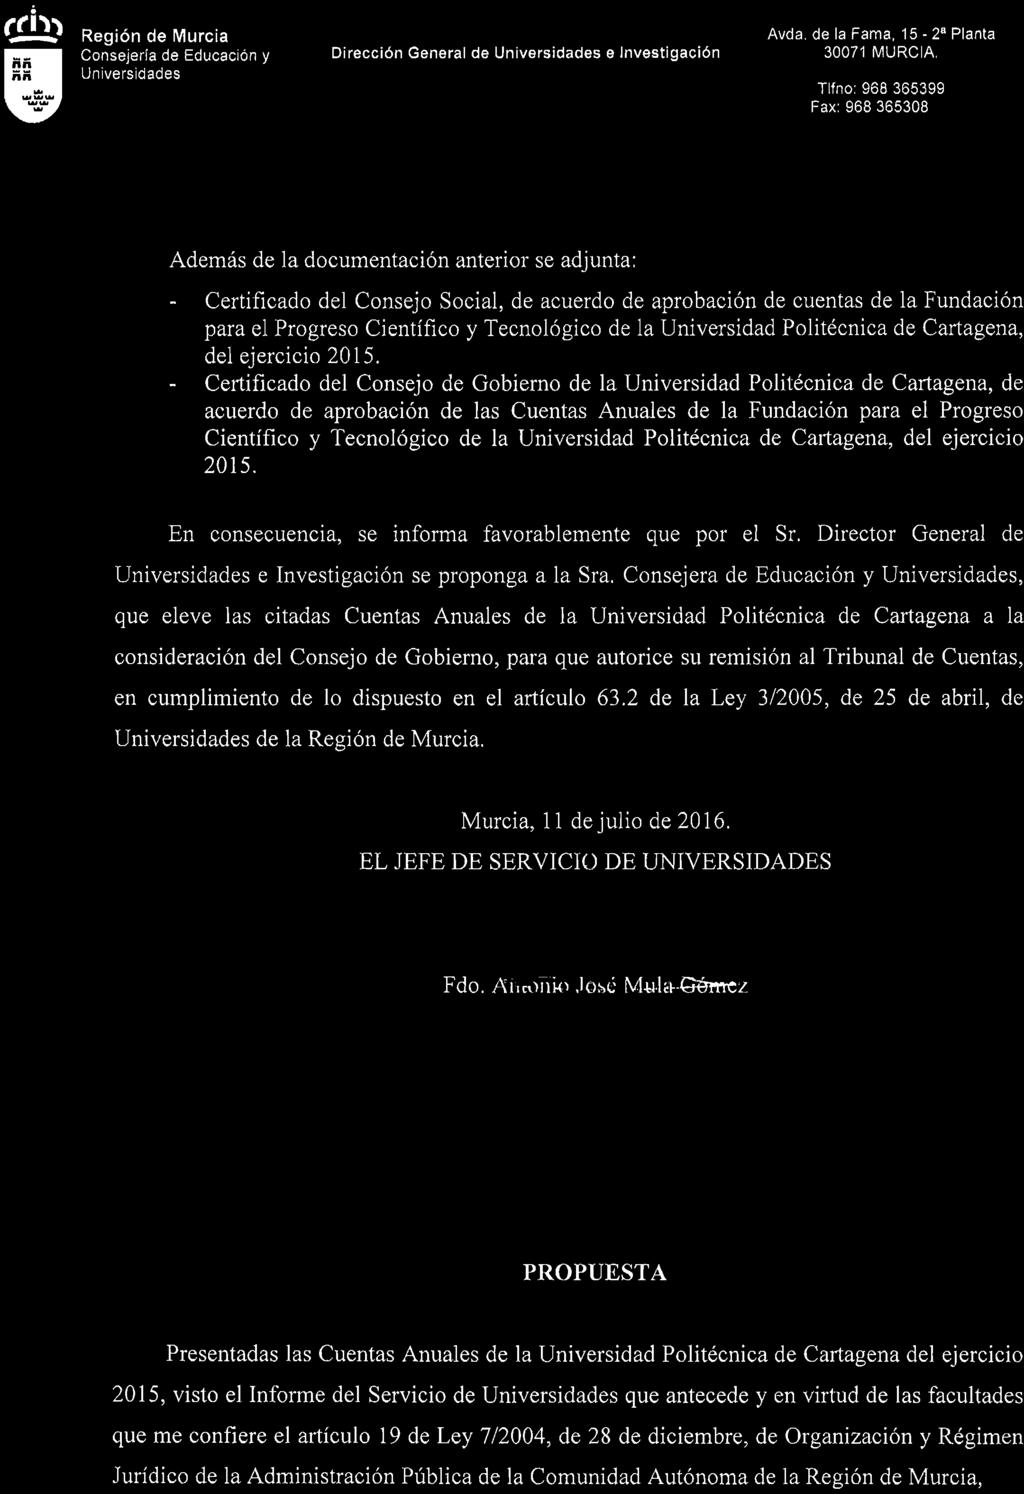 (lh, - Región I de Murcia Consejería de Educación y Dírección General de e Investigación Avda. de la Fama, 15-2" Planta 30071 MURCIA.